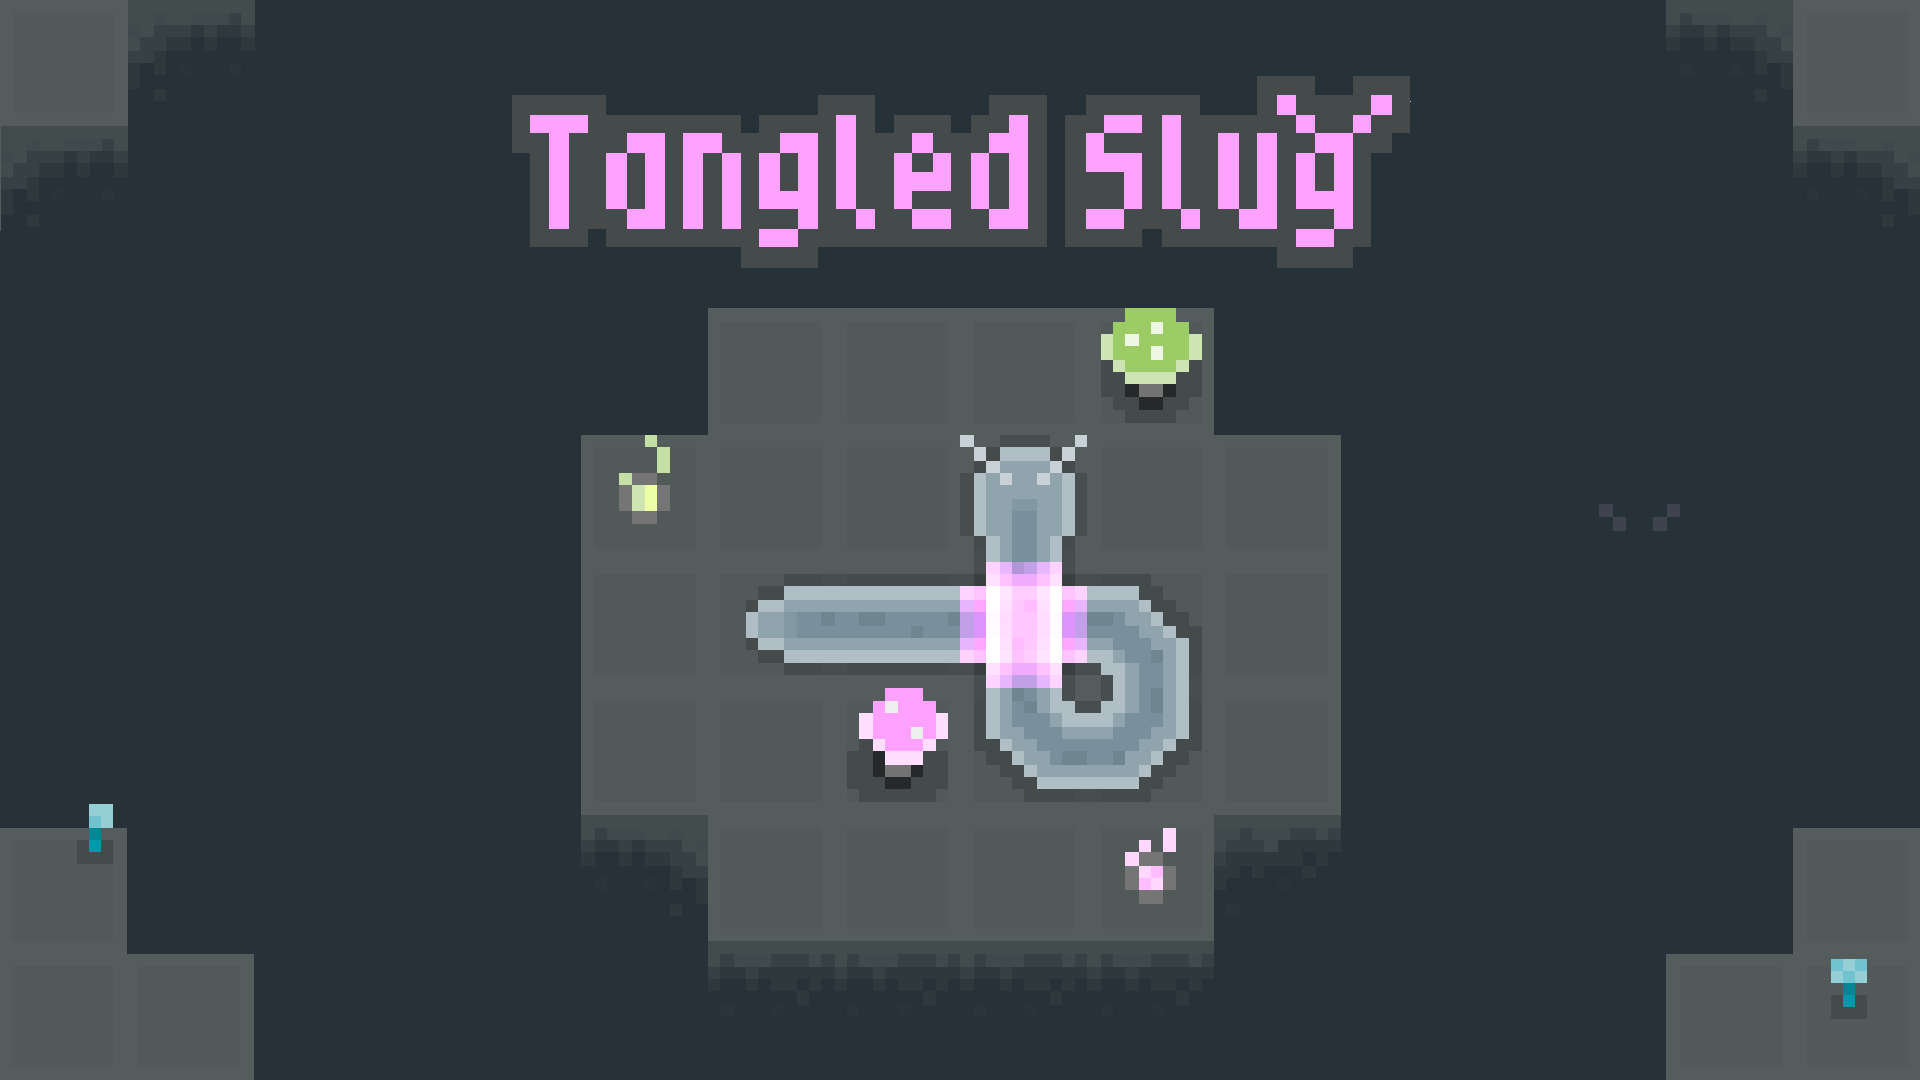 Tangled Slug Game Image